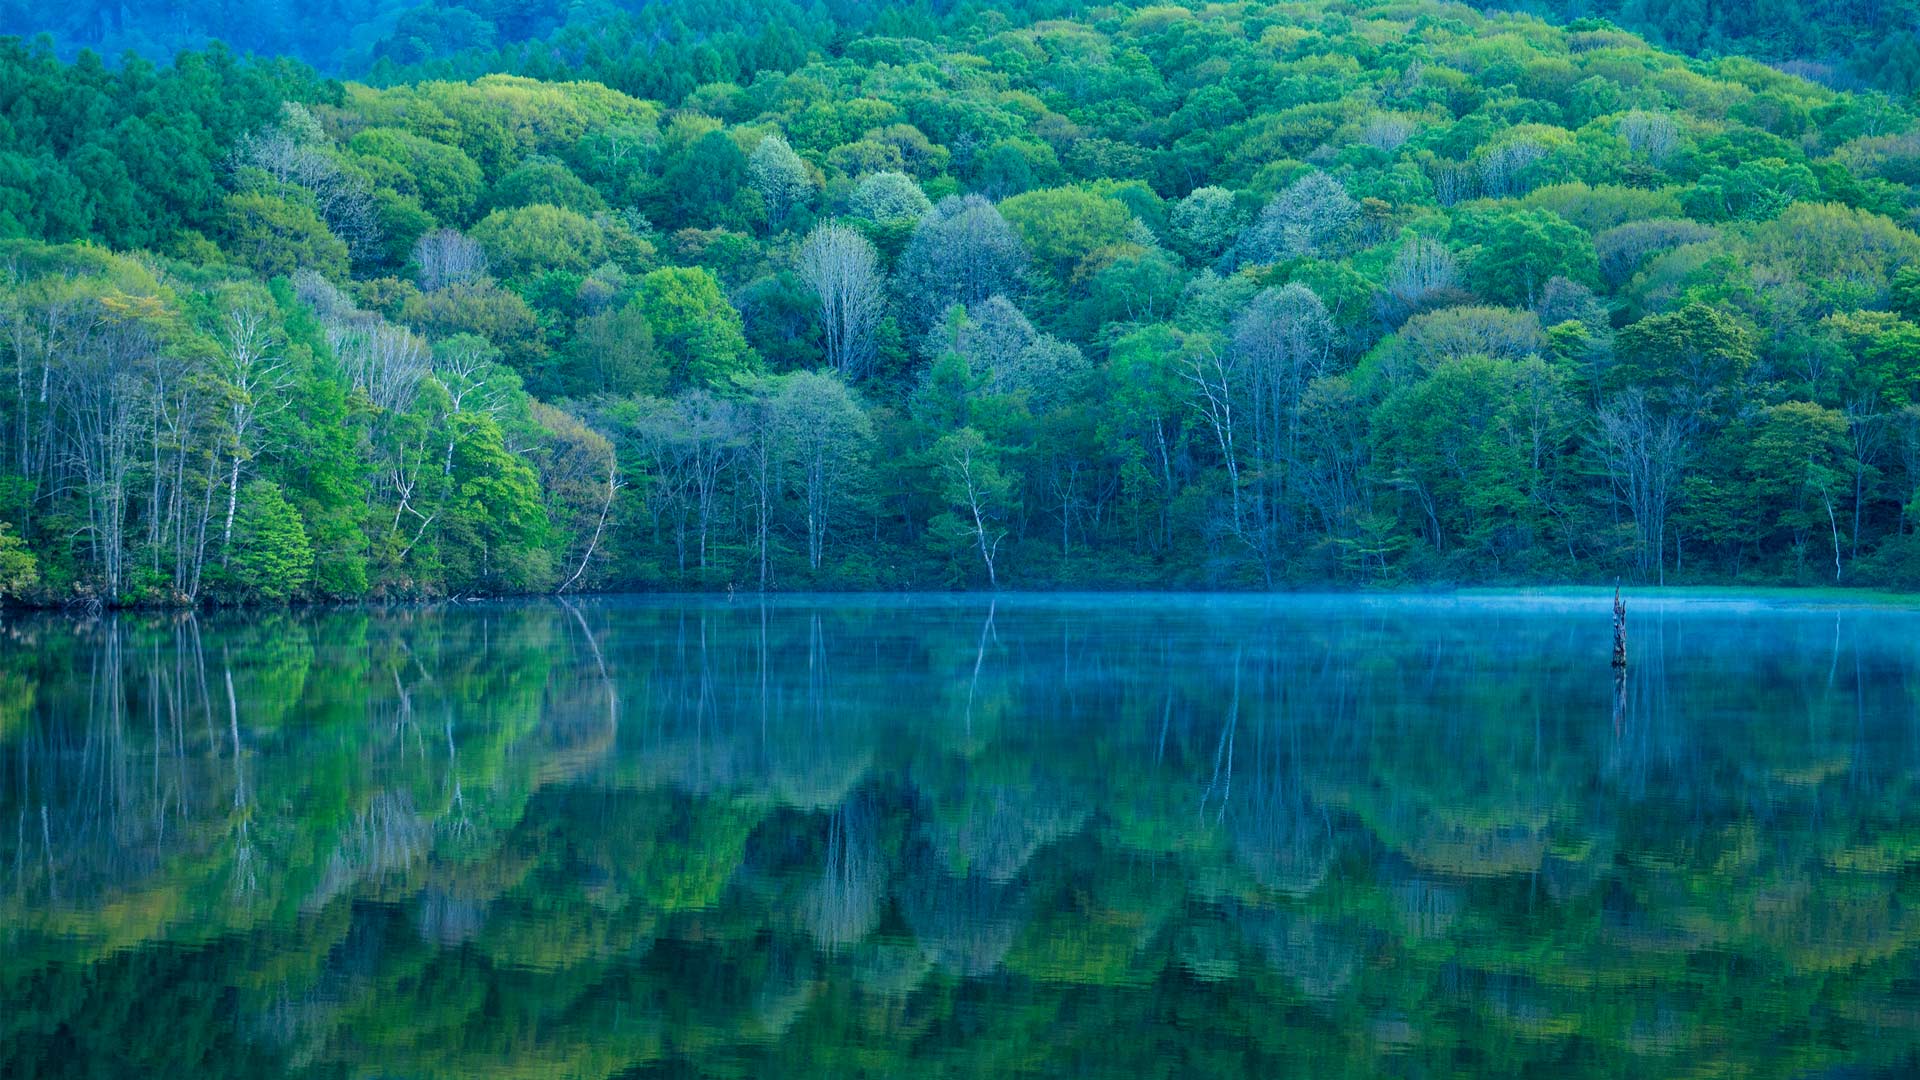 Un miroir qui reflète la beauté de la nature